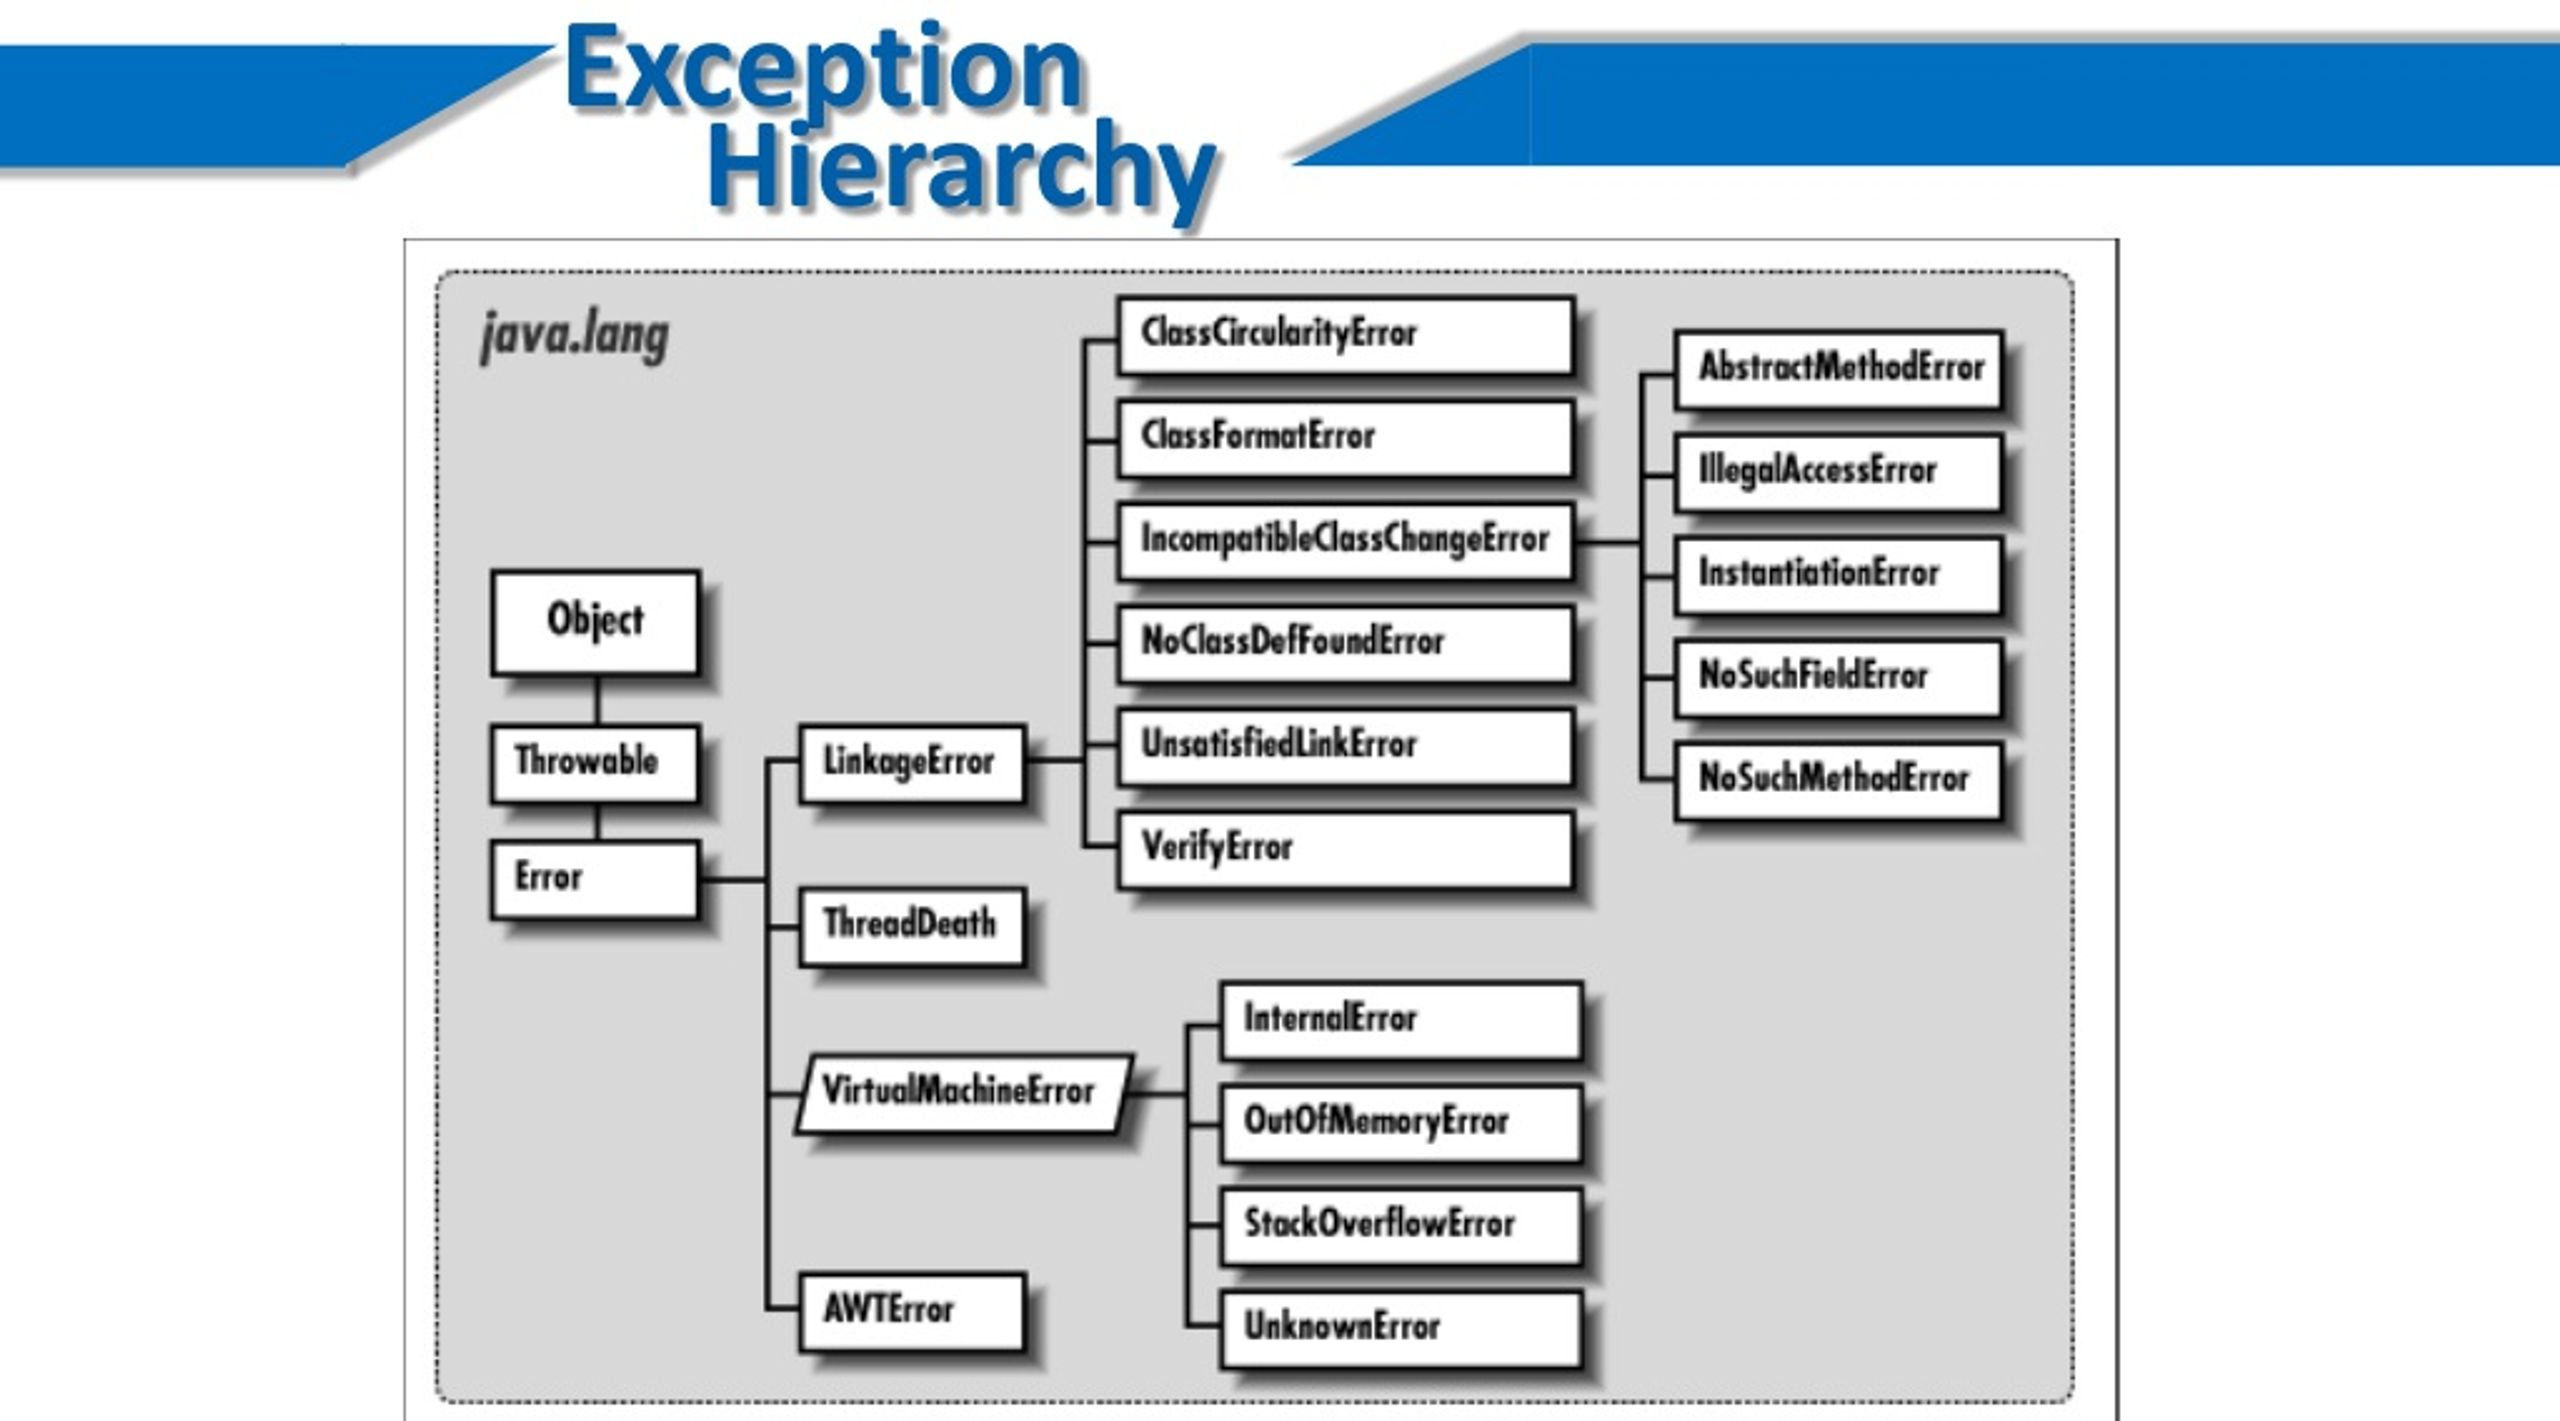 Java lang nosuchfielderror. Иерархия классов исключений в java. Иерархия классов AWT java. Java exception Hierarchy. Иерархия exception java.